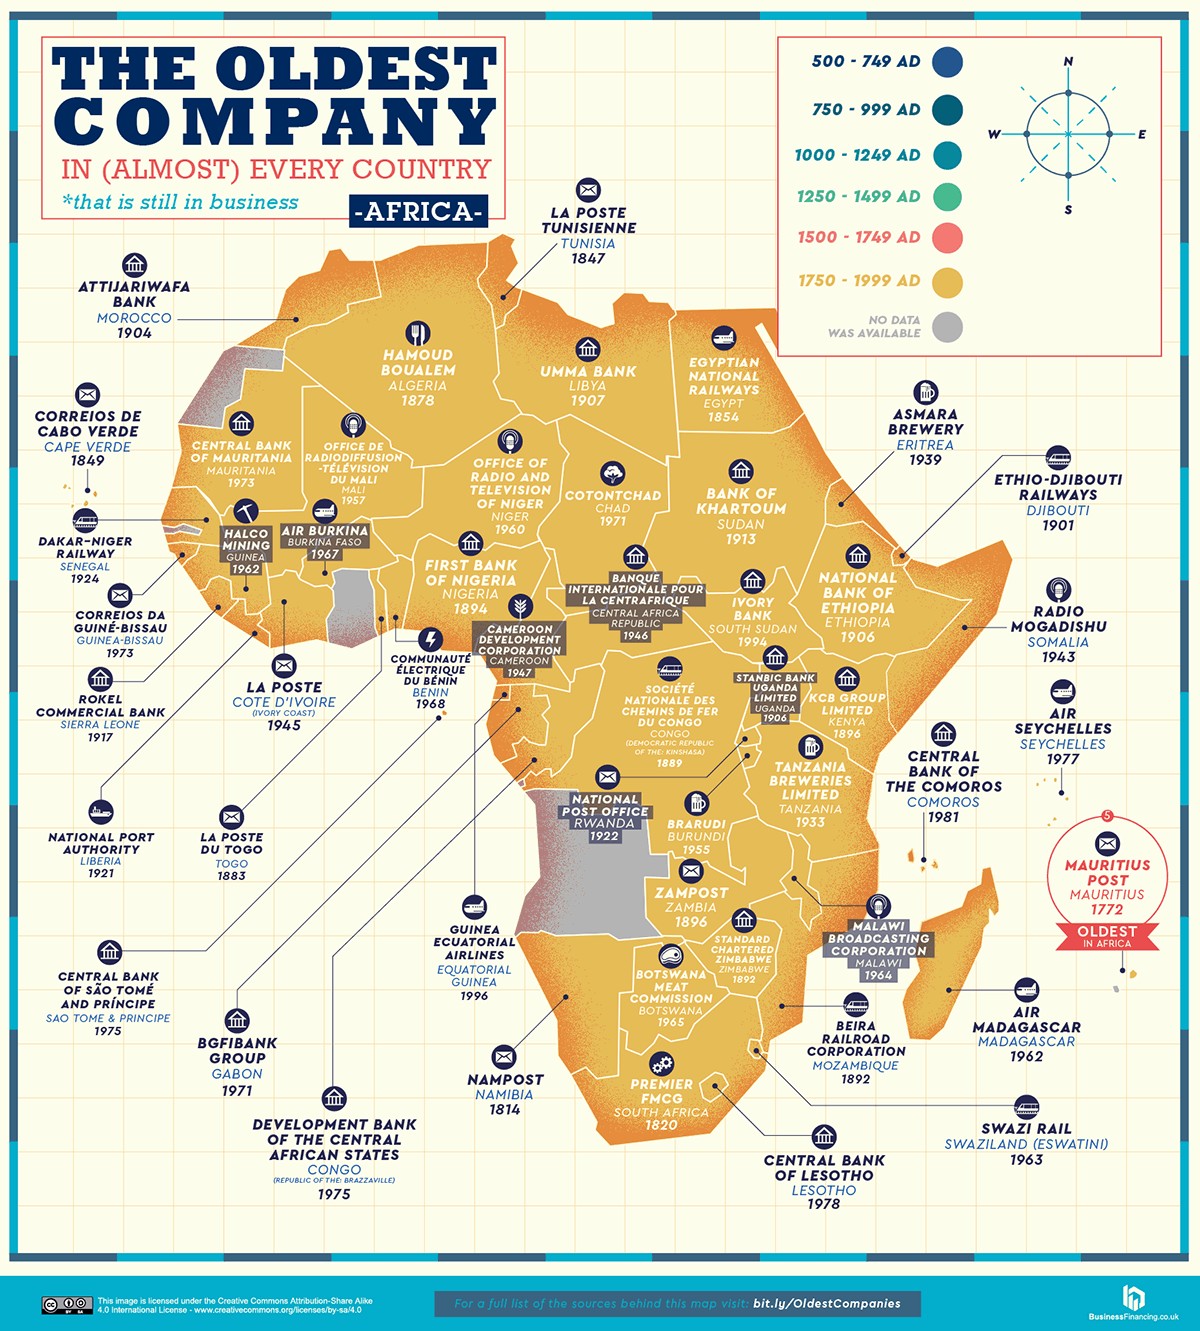 Mapa com as empresas mais antigas em atividade da África (Foto: Reprodução/Business Insider)